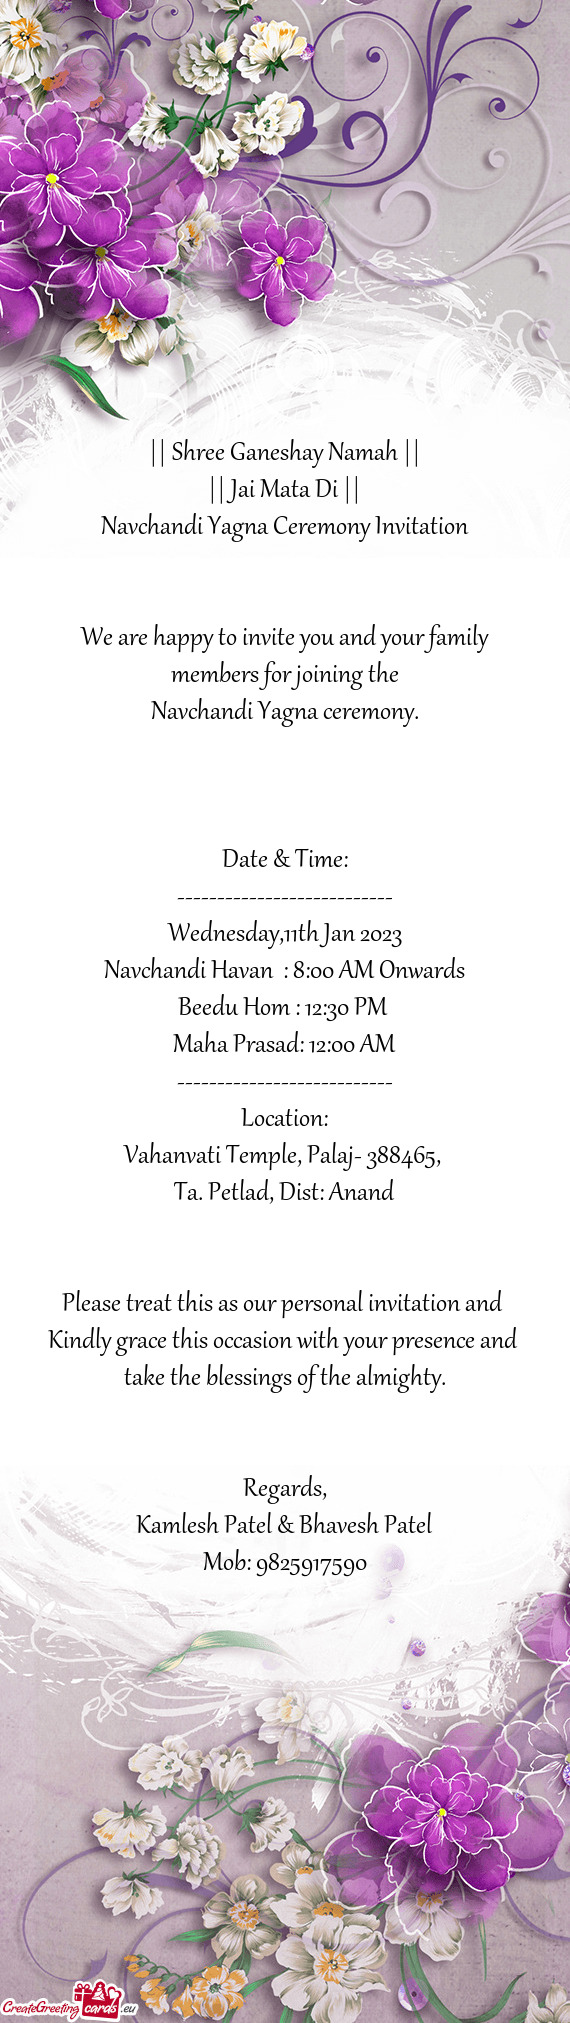 Navchandi Yagna ceremony